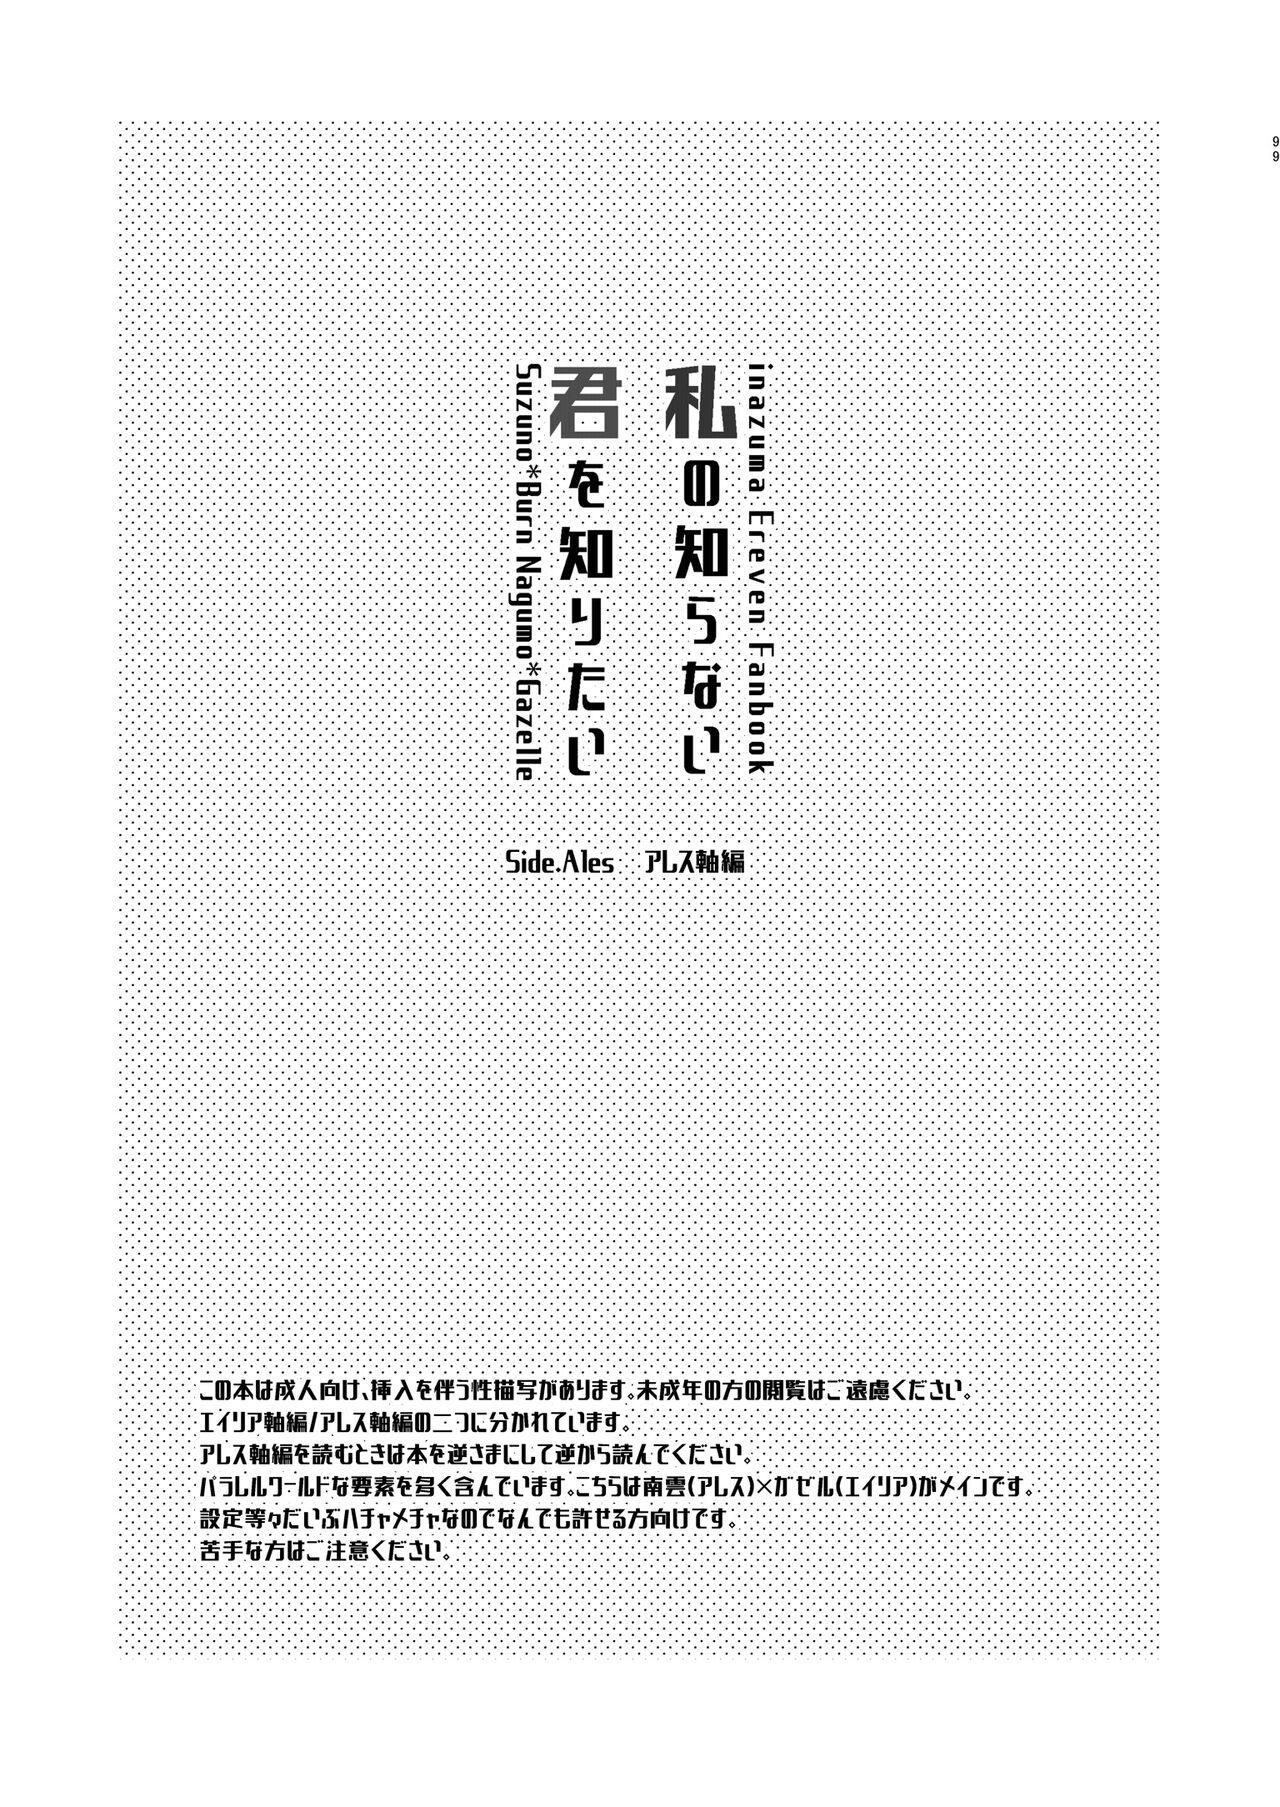 Old Watashi no Shiranai Kimi o Shiritai - Inazuma eleven Plug - Page 2